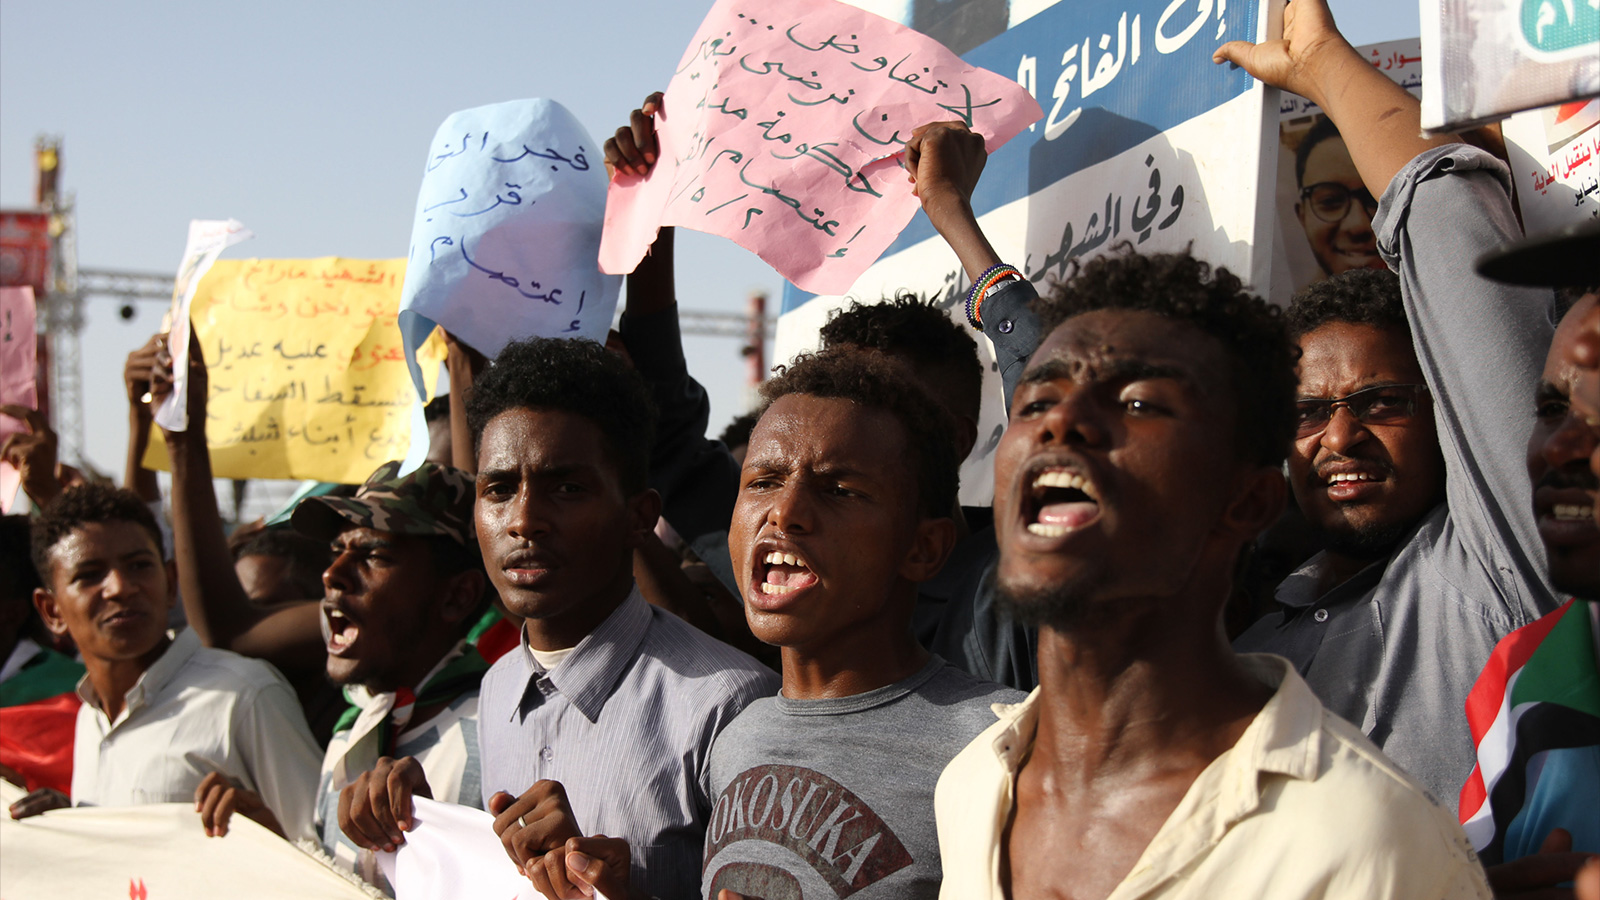 ‪الرد من الاعتصام جاء سريعا حيث تعالت الأصوات المطالبة بسلطة مدنية‬  (الجزيرة)